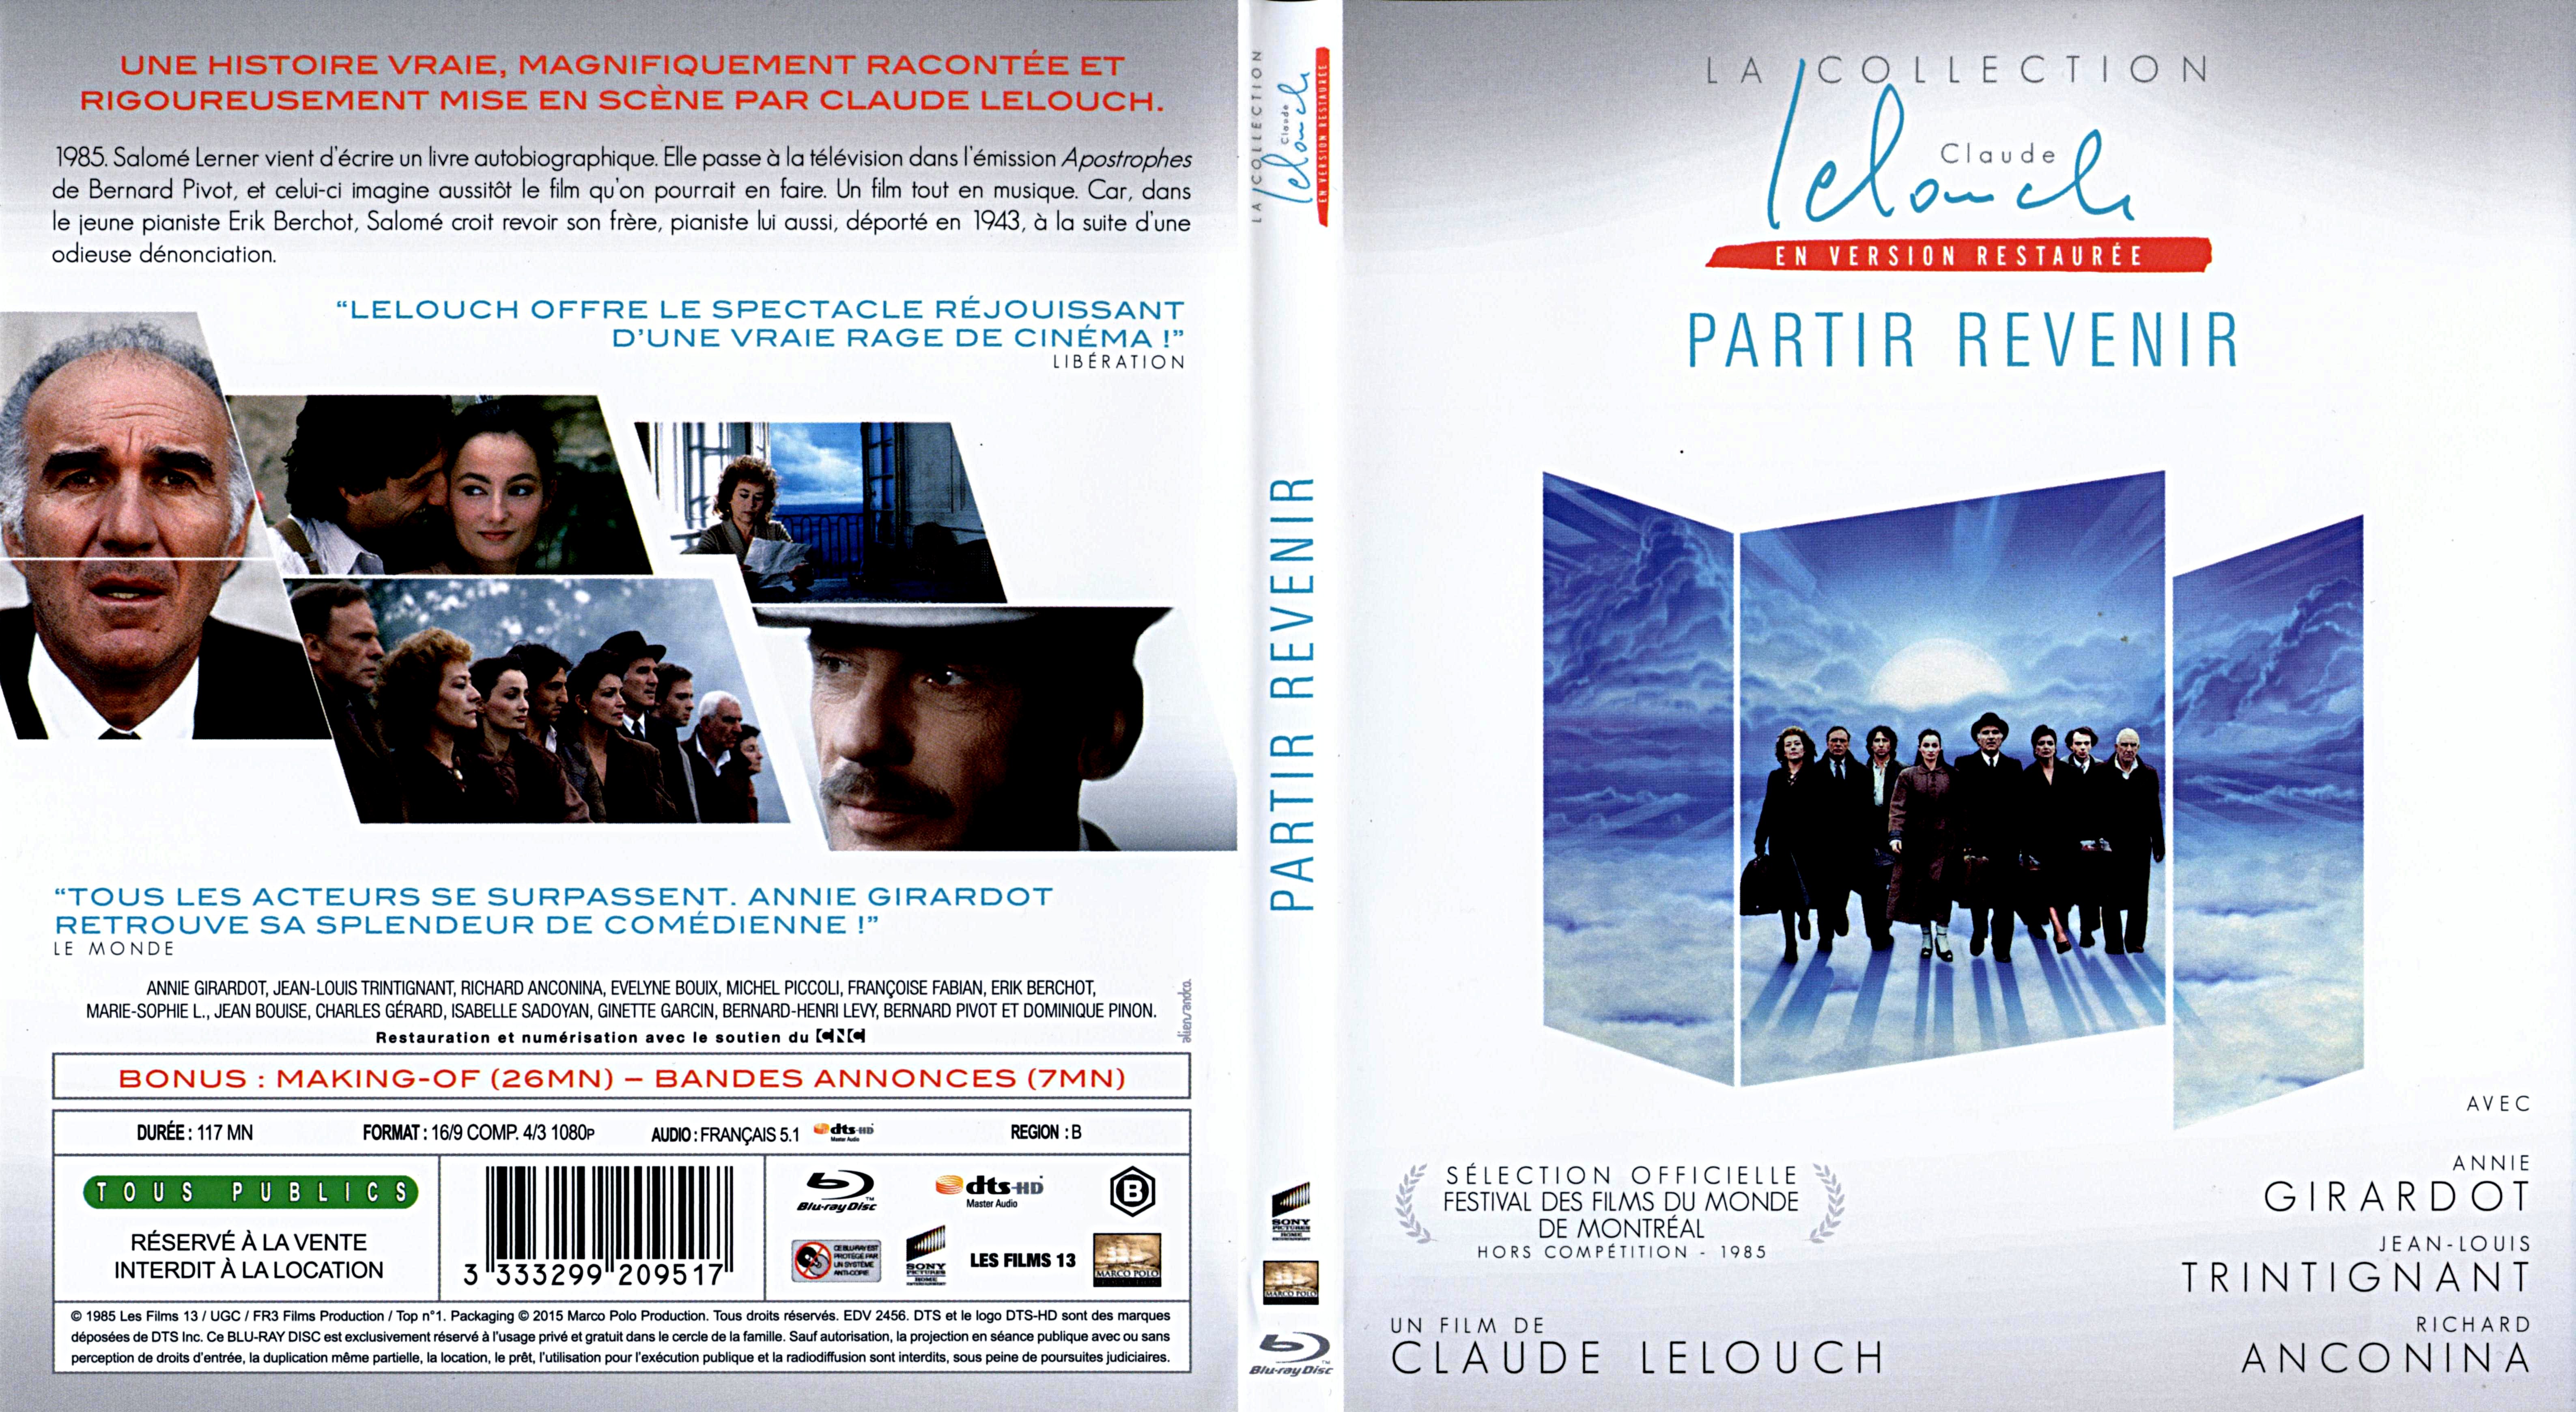 Jaquette DVD Partir Revenir (BLU-RAY)